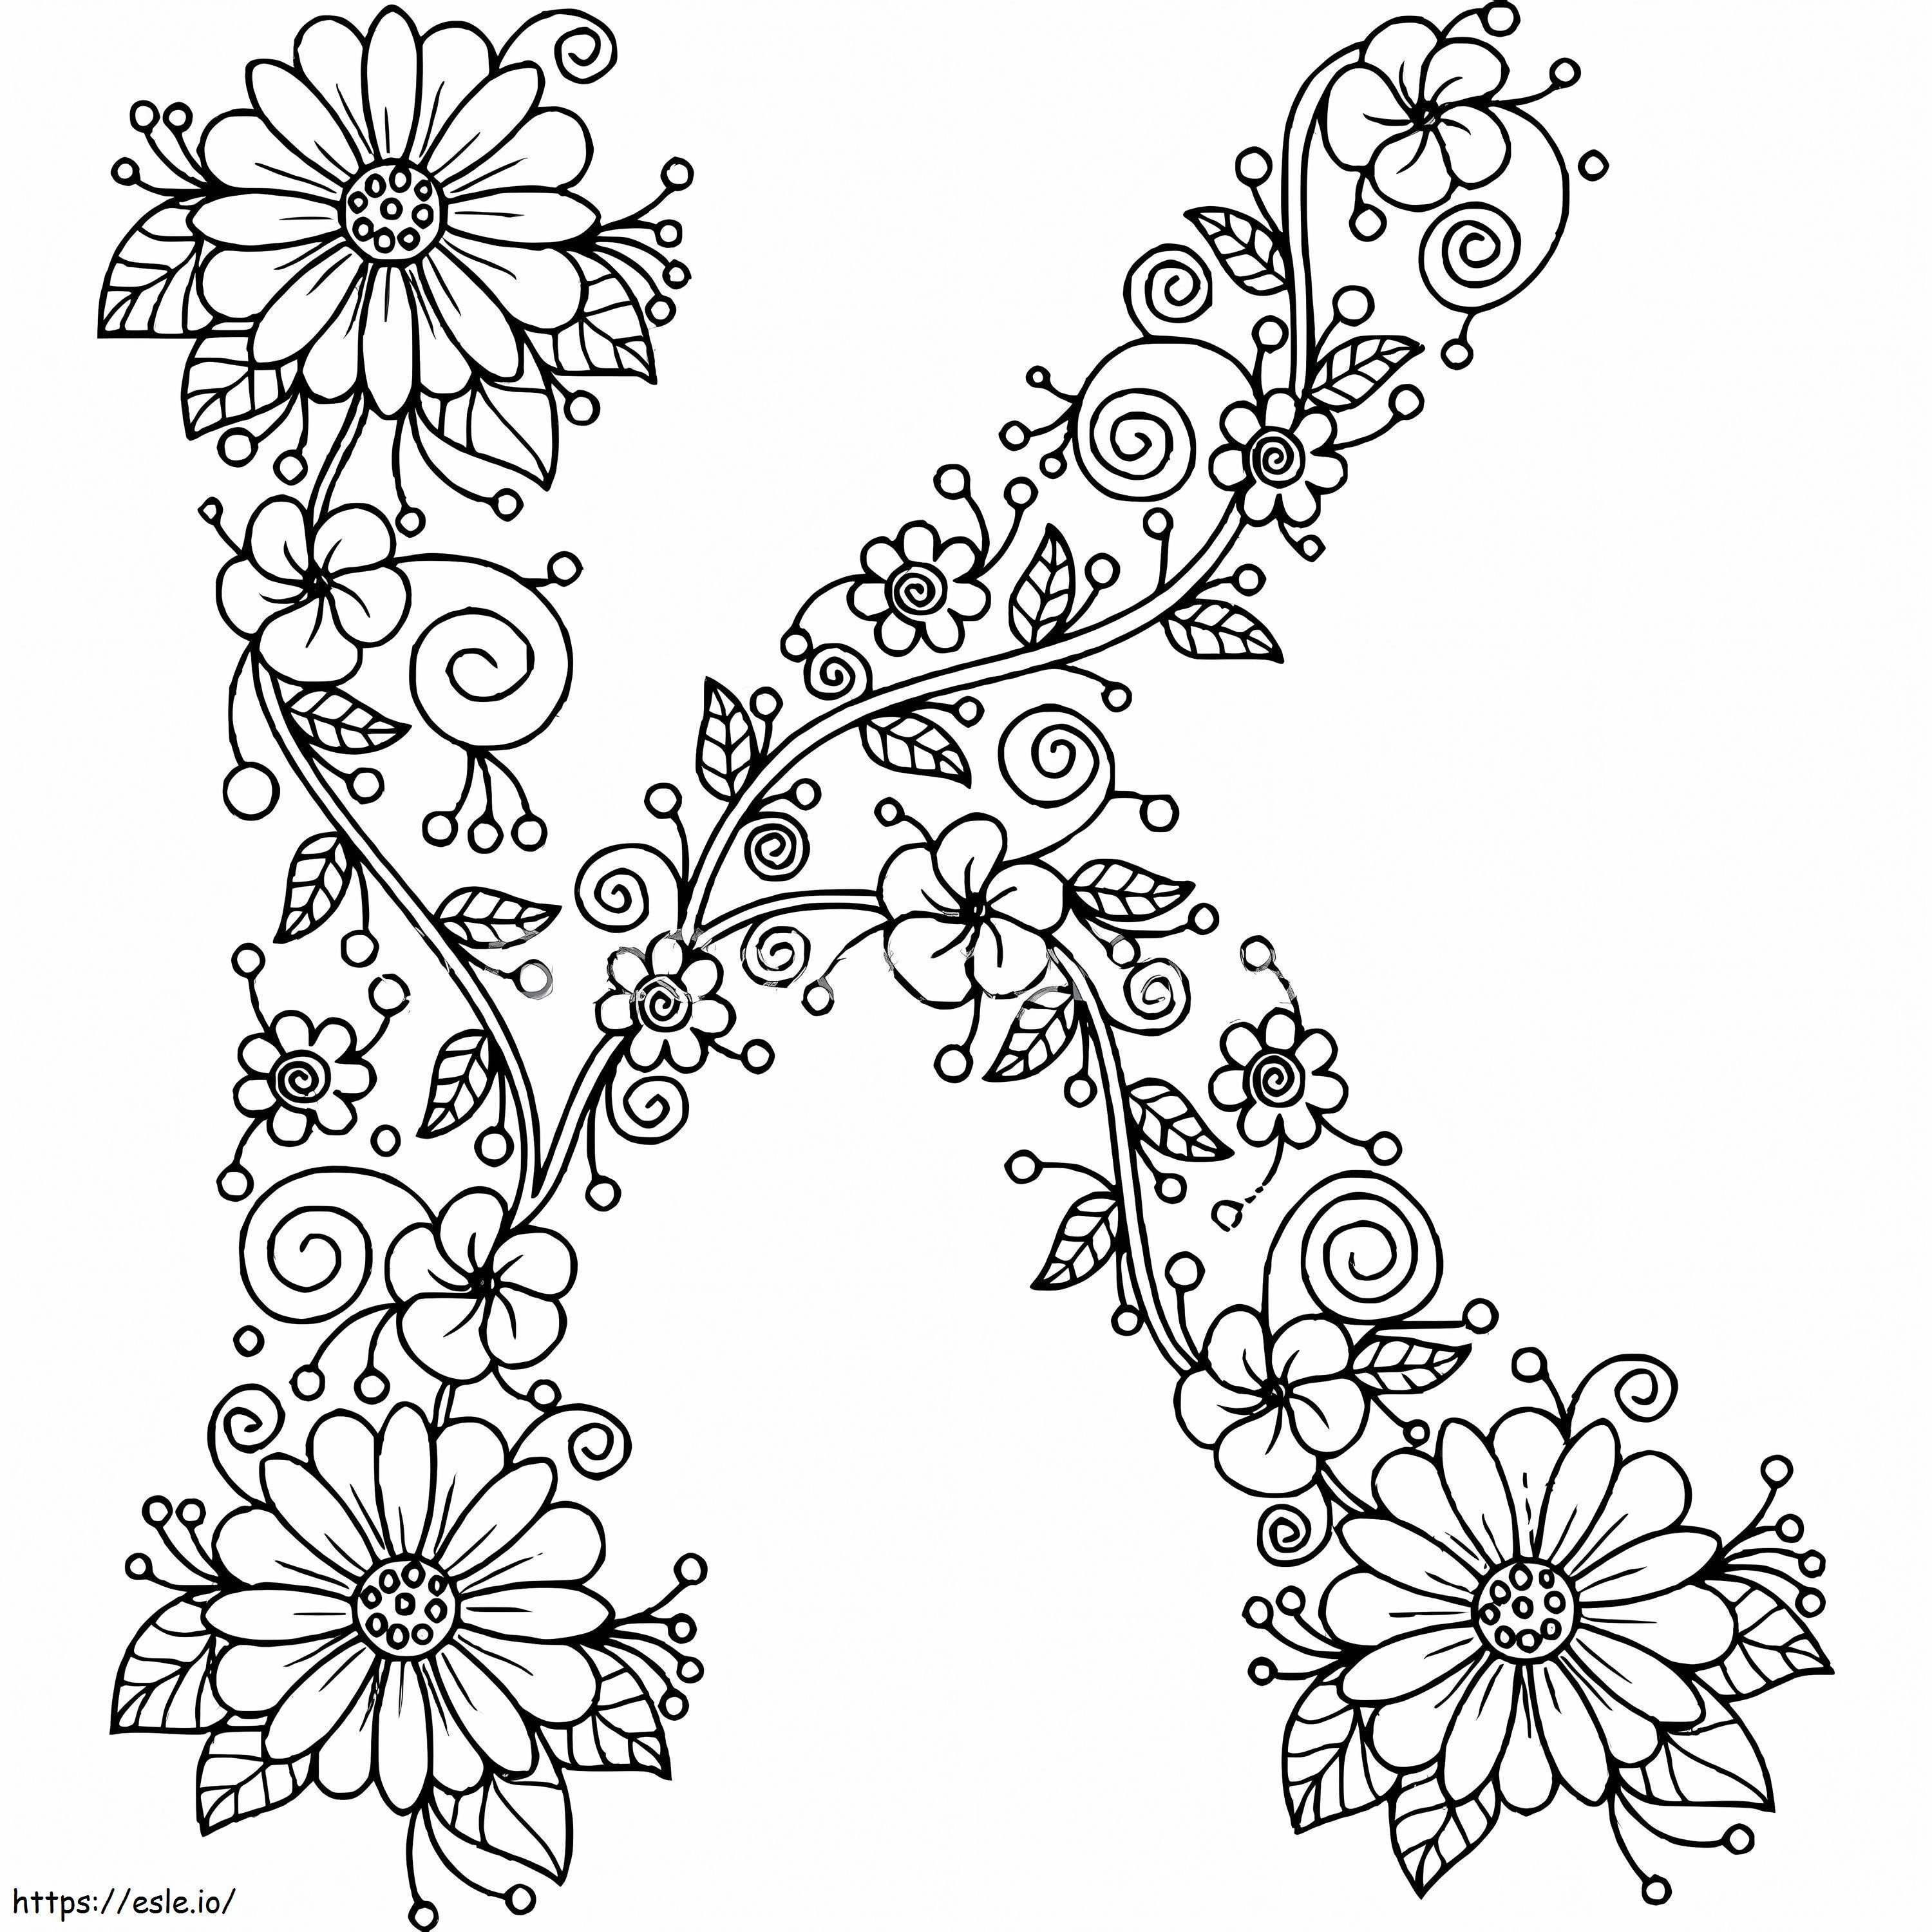 Blumenbuchstabe K ausmalbilder